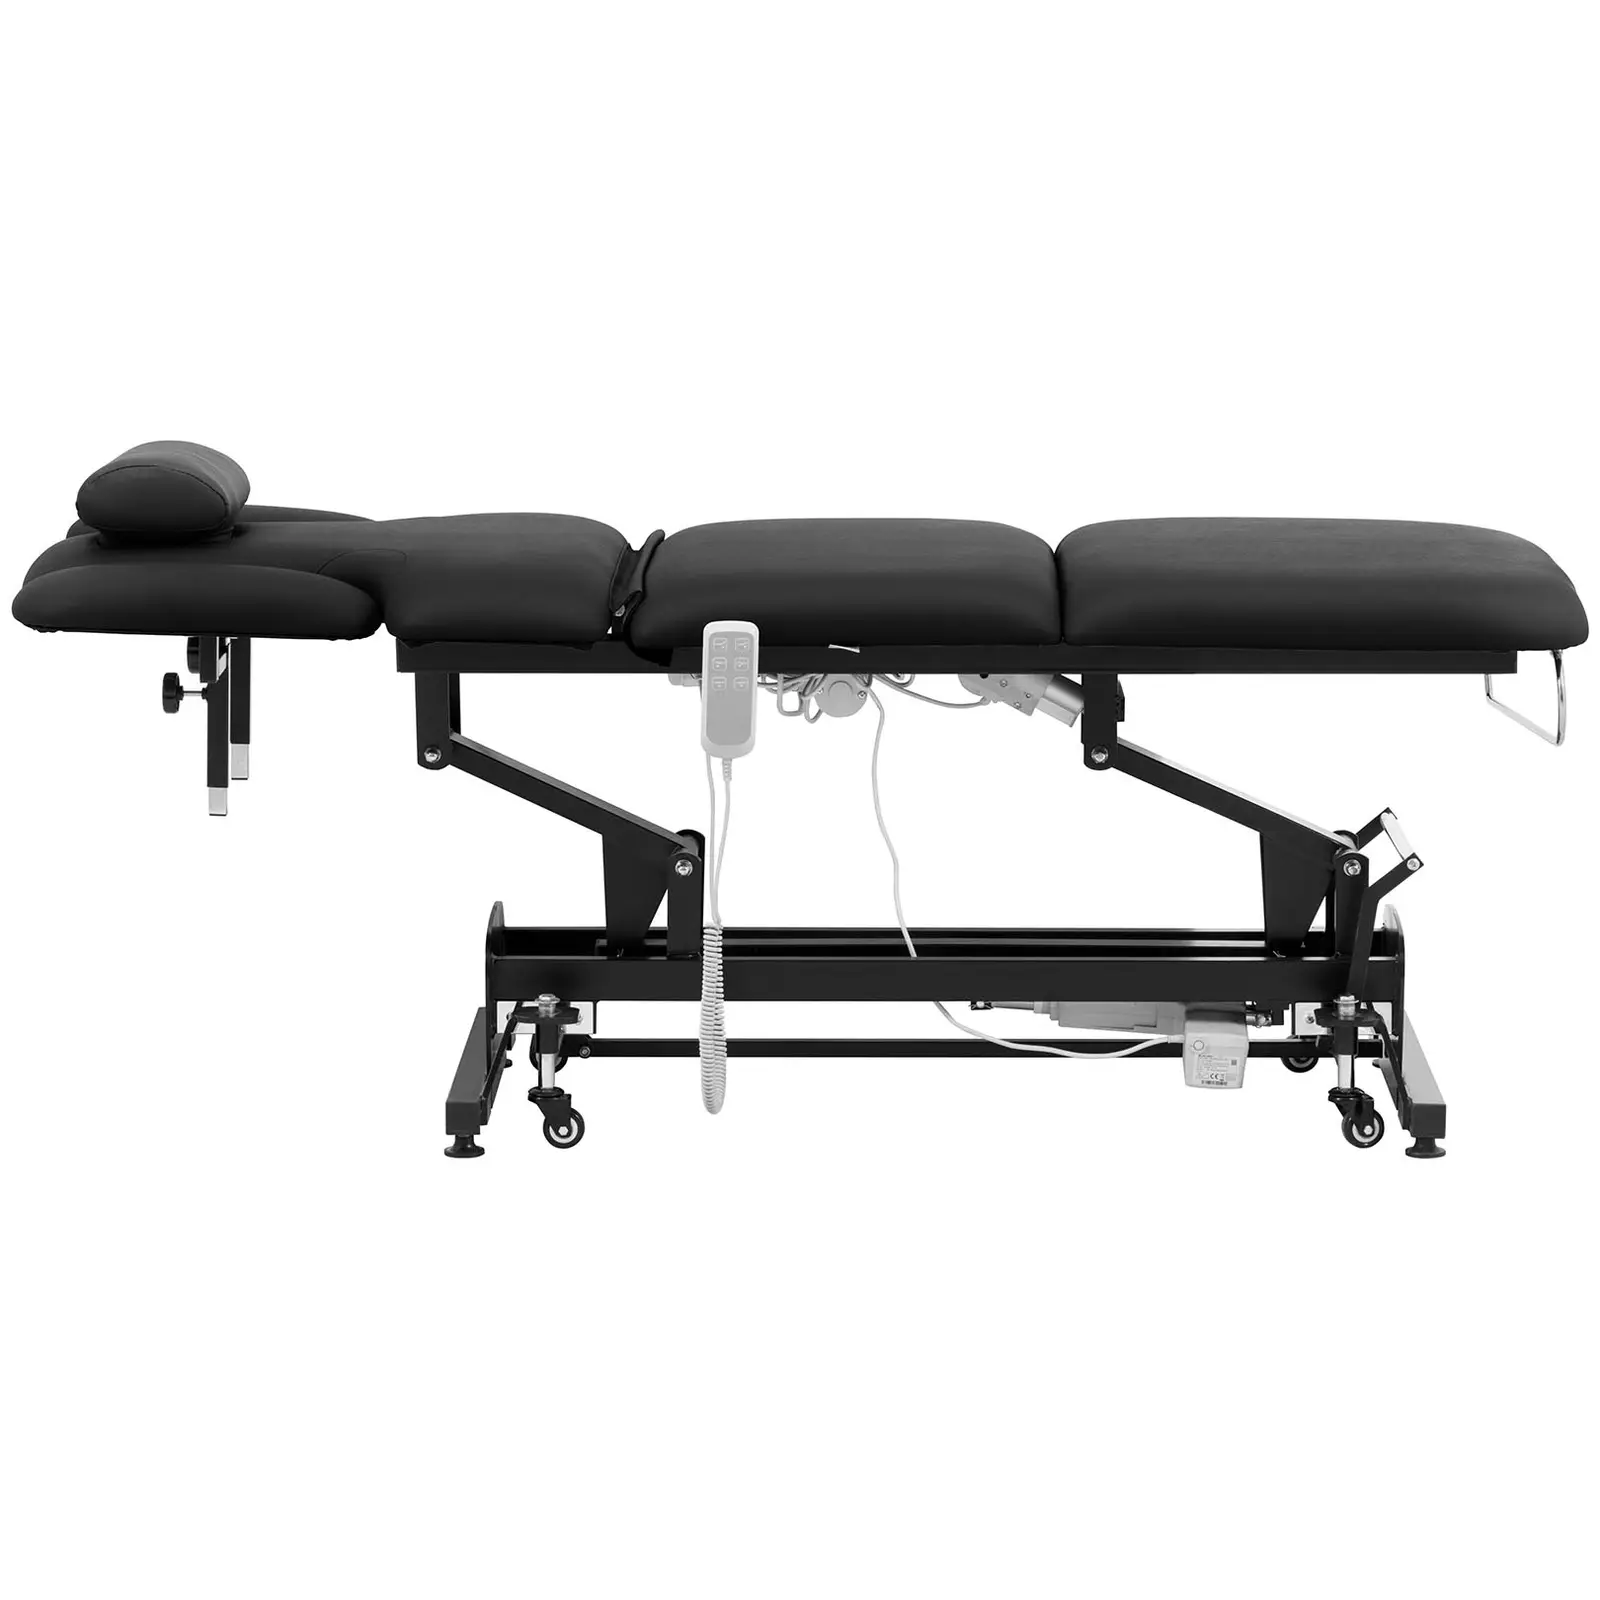 Elektrisk massagebänk - 3 motorer - 250 kg - Svart